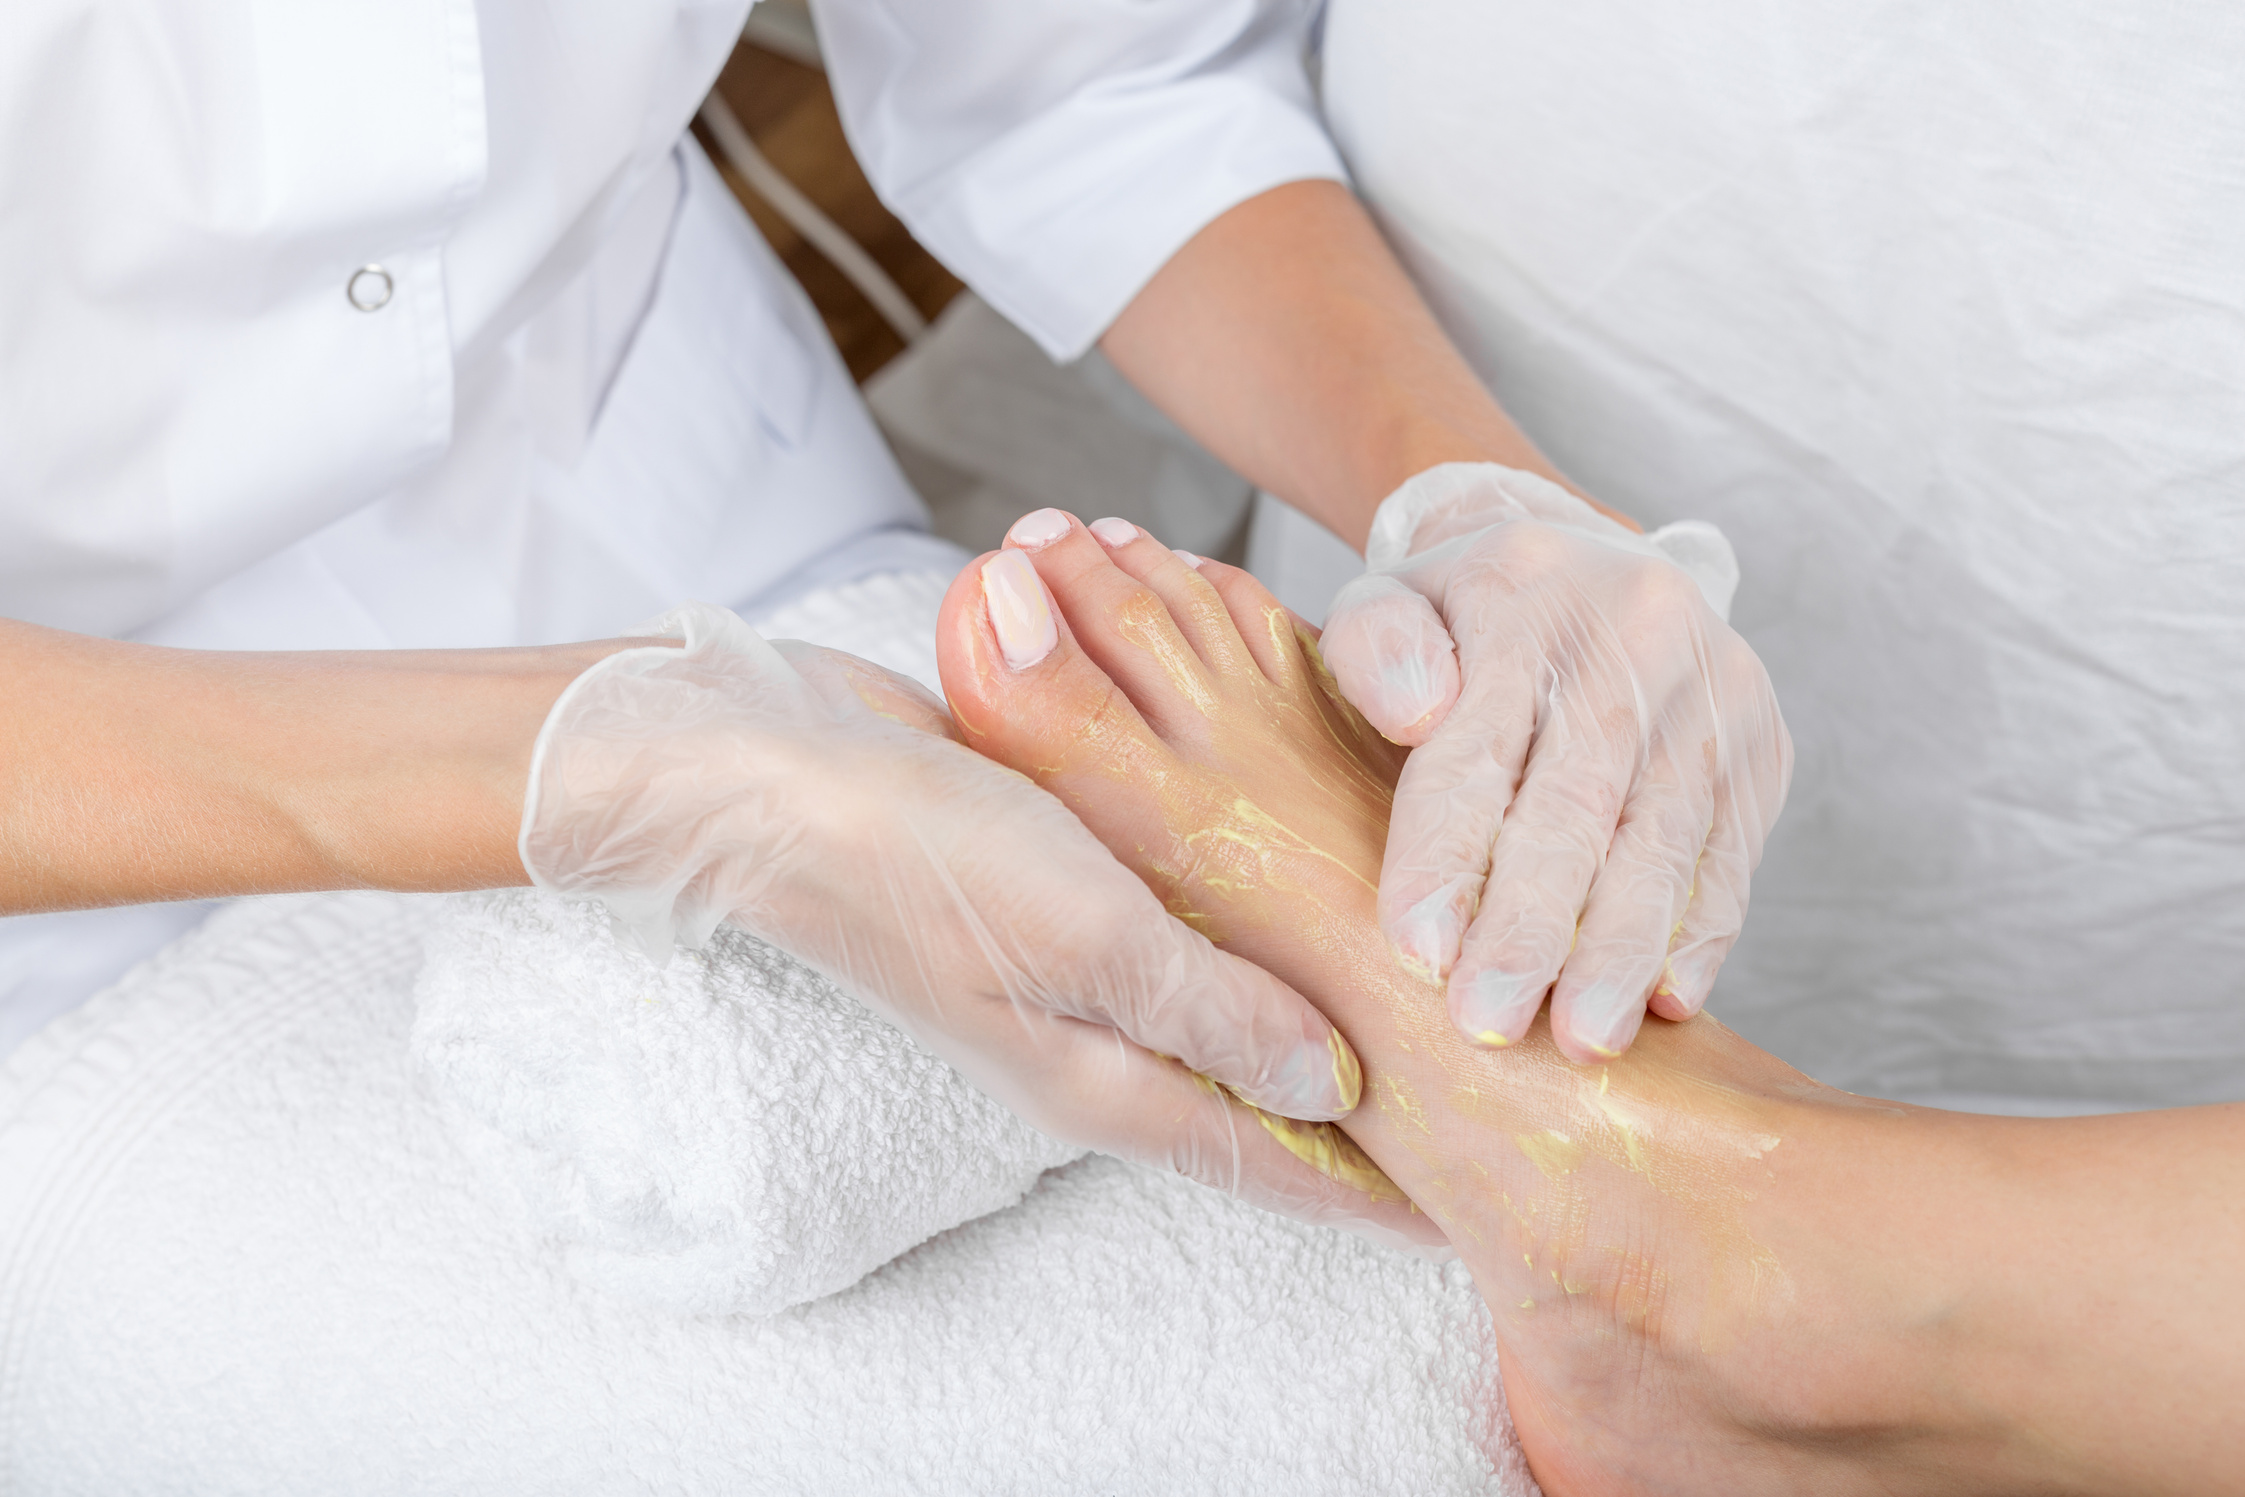 Foot care in beauty salon